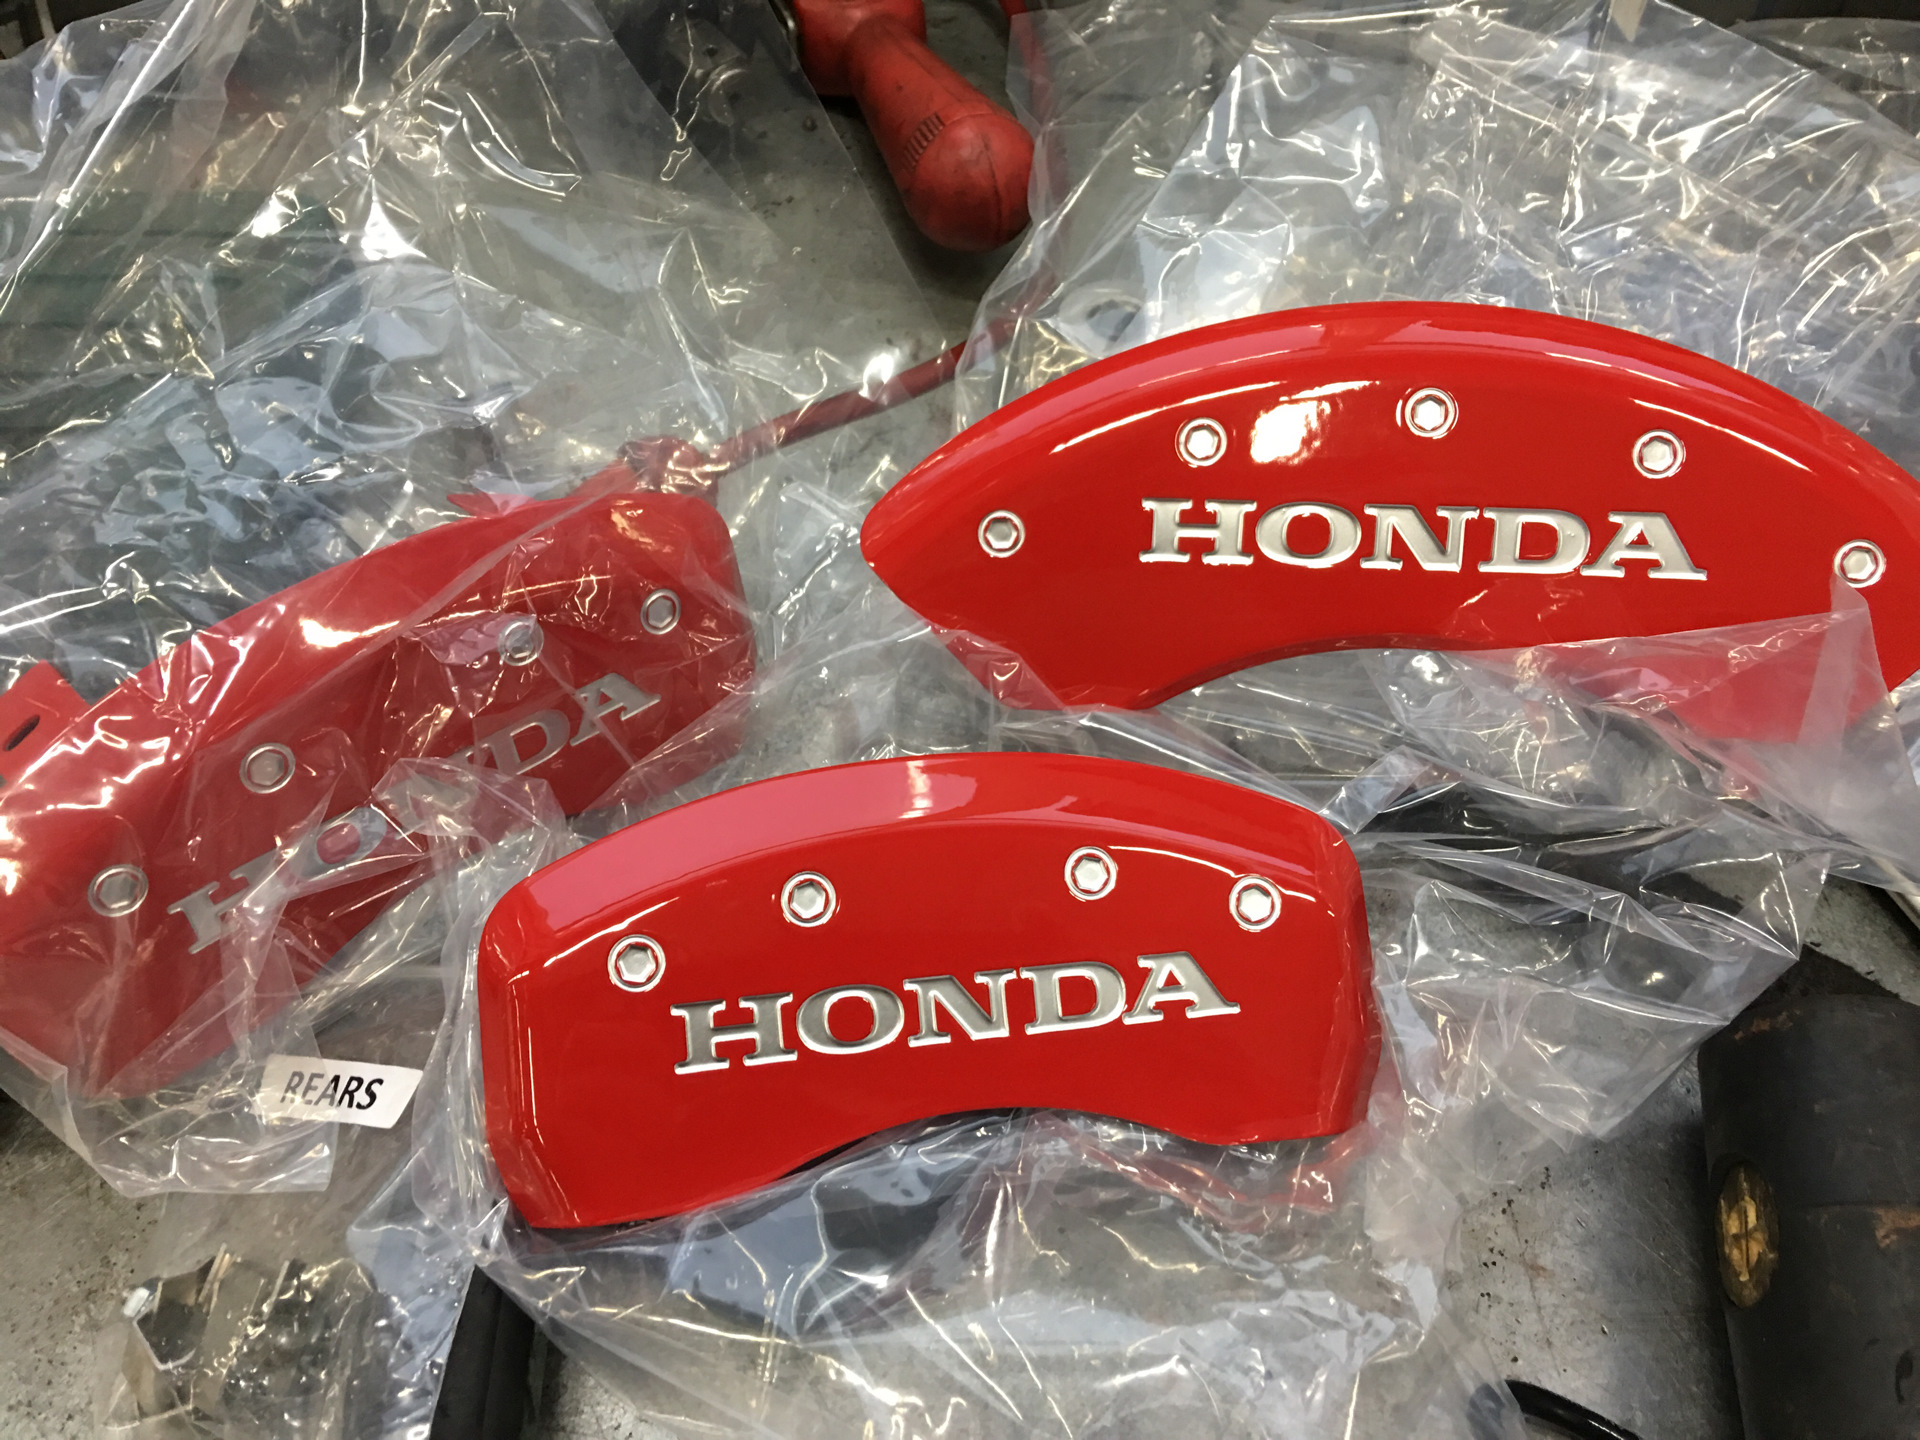 Honda v накладки. Накладки на суппорта Хонда Аккорд 8. Накладки на тормозные суппорта Хонда Аккорд 7. Накладки на суппорта Хонда Аккорд 7. Накладки на суппорта Honda Civic 5.